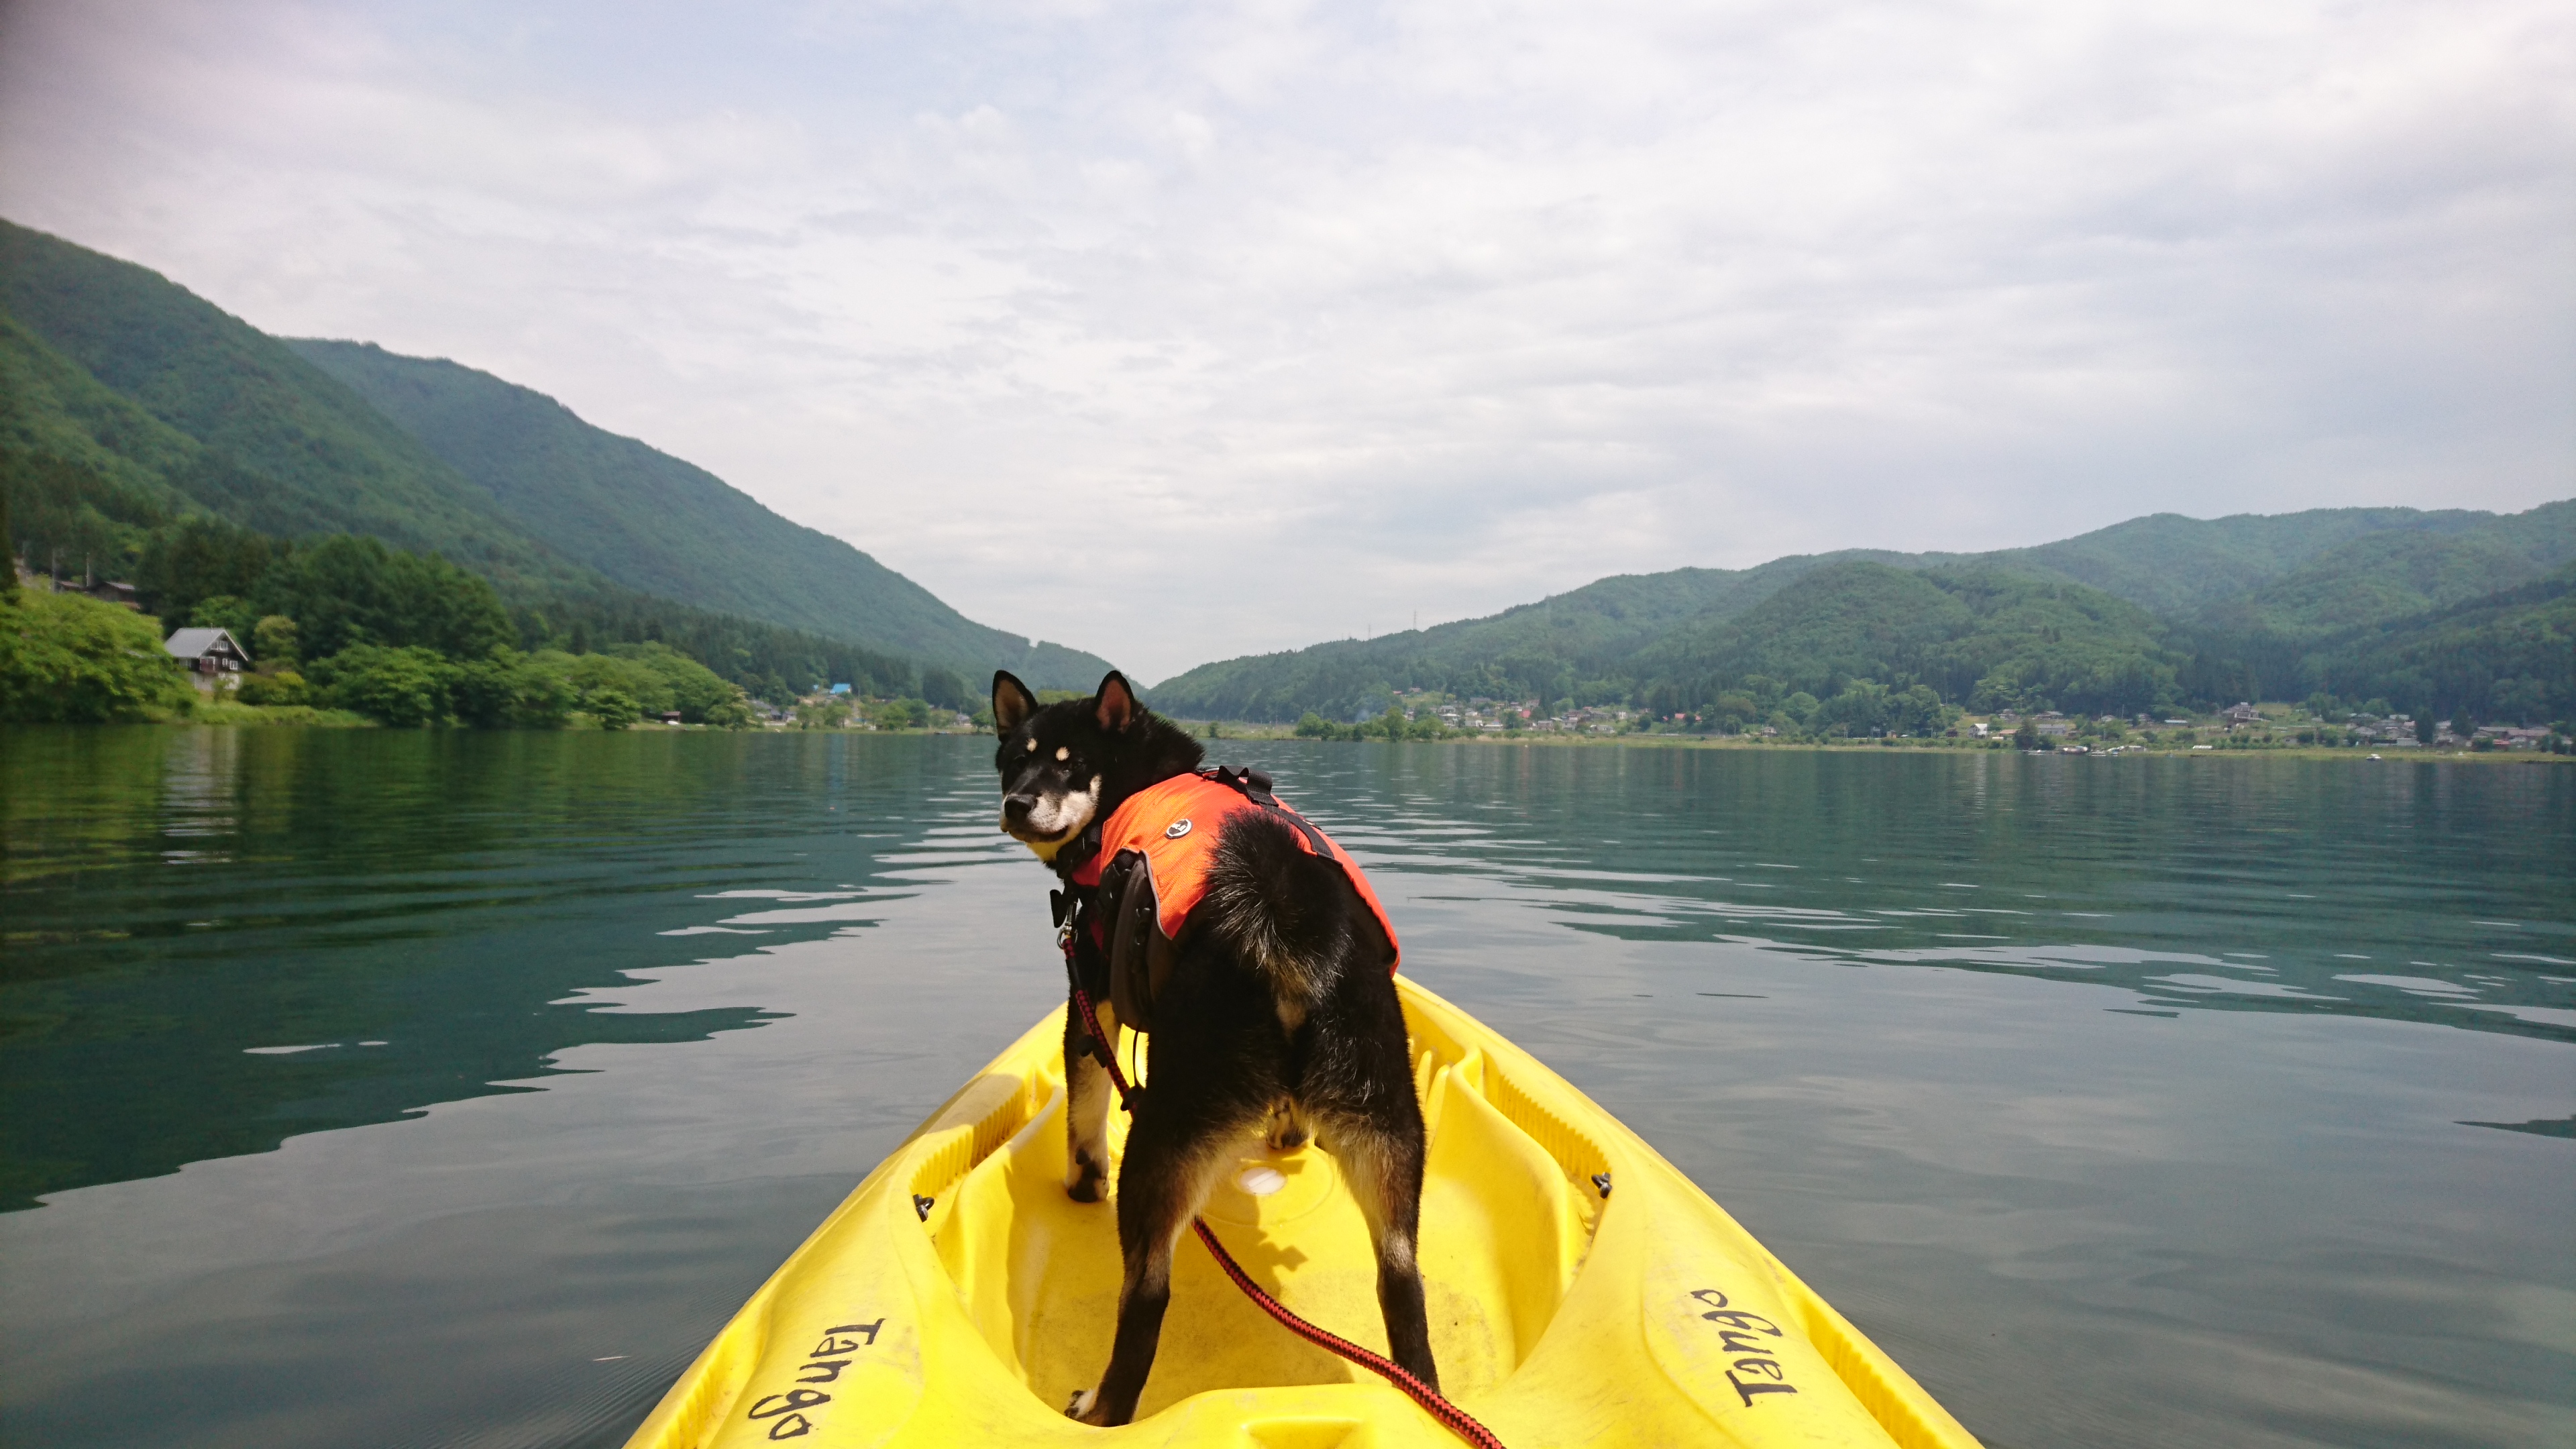 愛犬と一緒に楽しめる夏のウォータースポーツ特集 カヌー カヤック ラフティング体験できるスポット情報 愛犬との旅行ならイヌトミィ